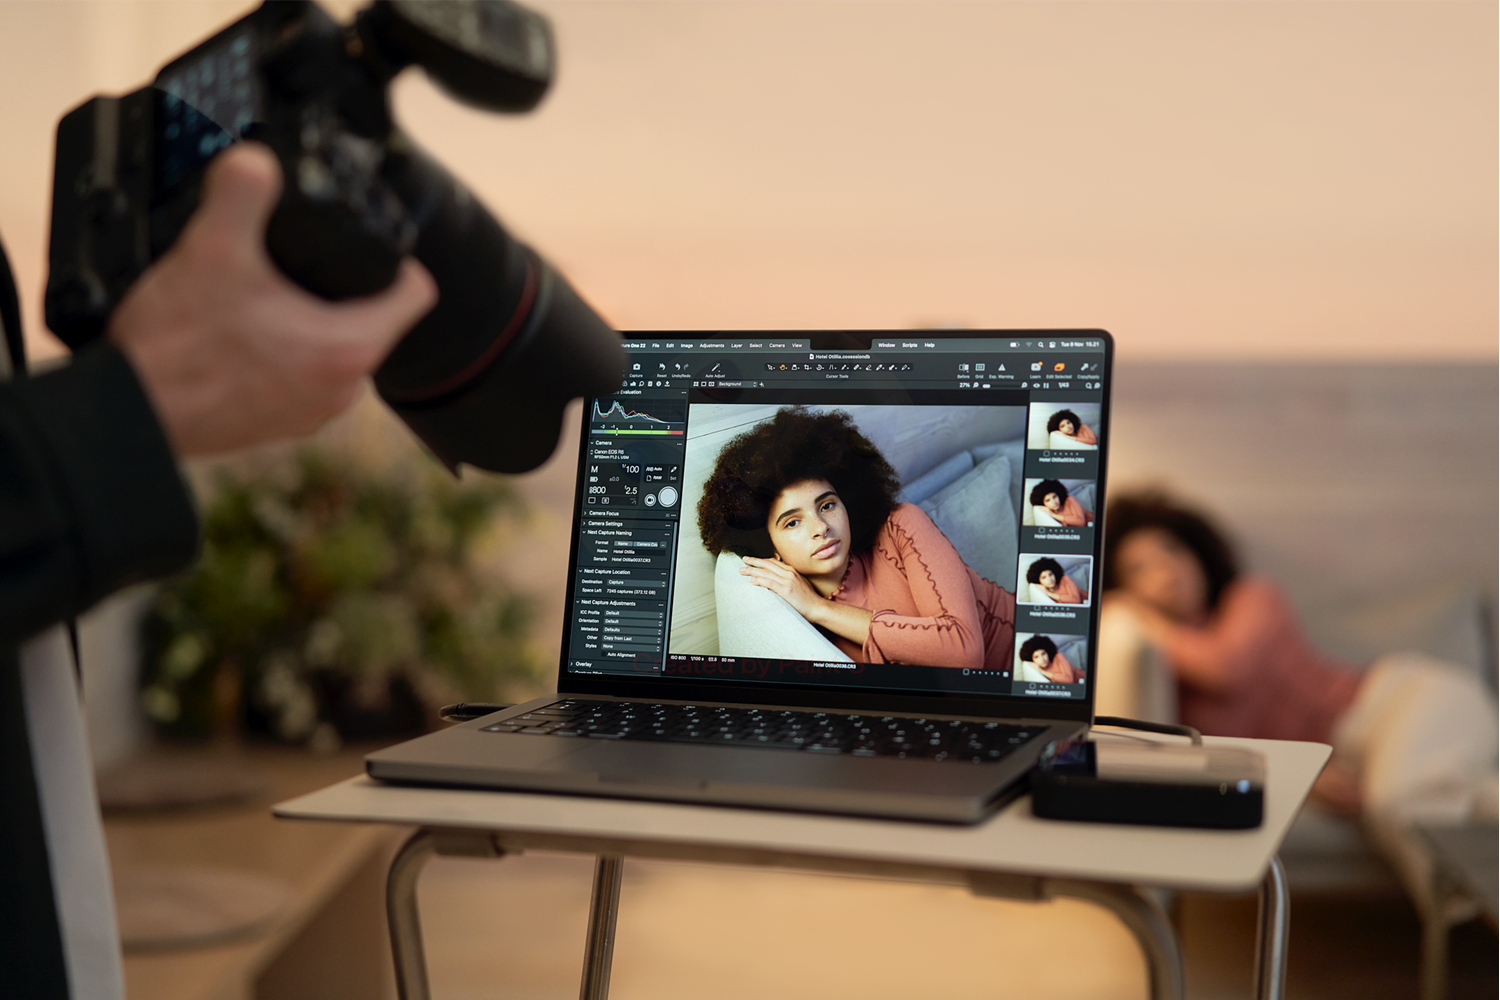 Bilder von Frau im Hintergrund, die über Tethering auf dem Laptop angezeigt werden.